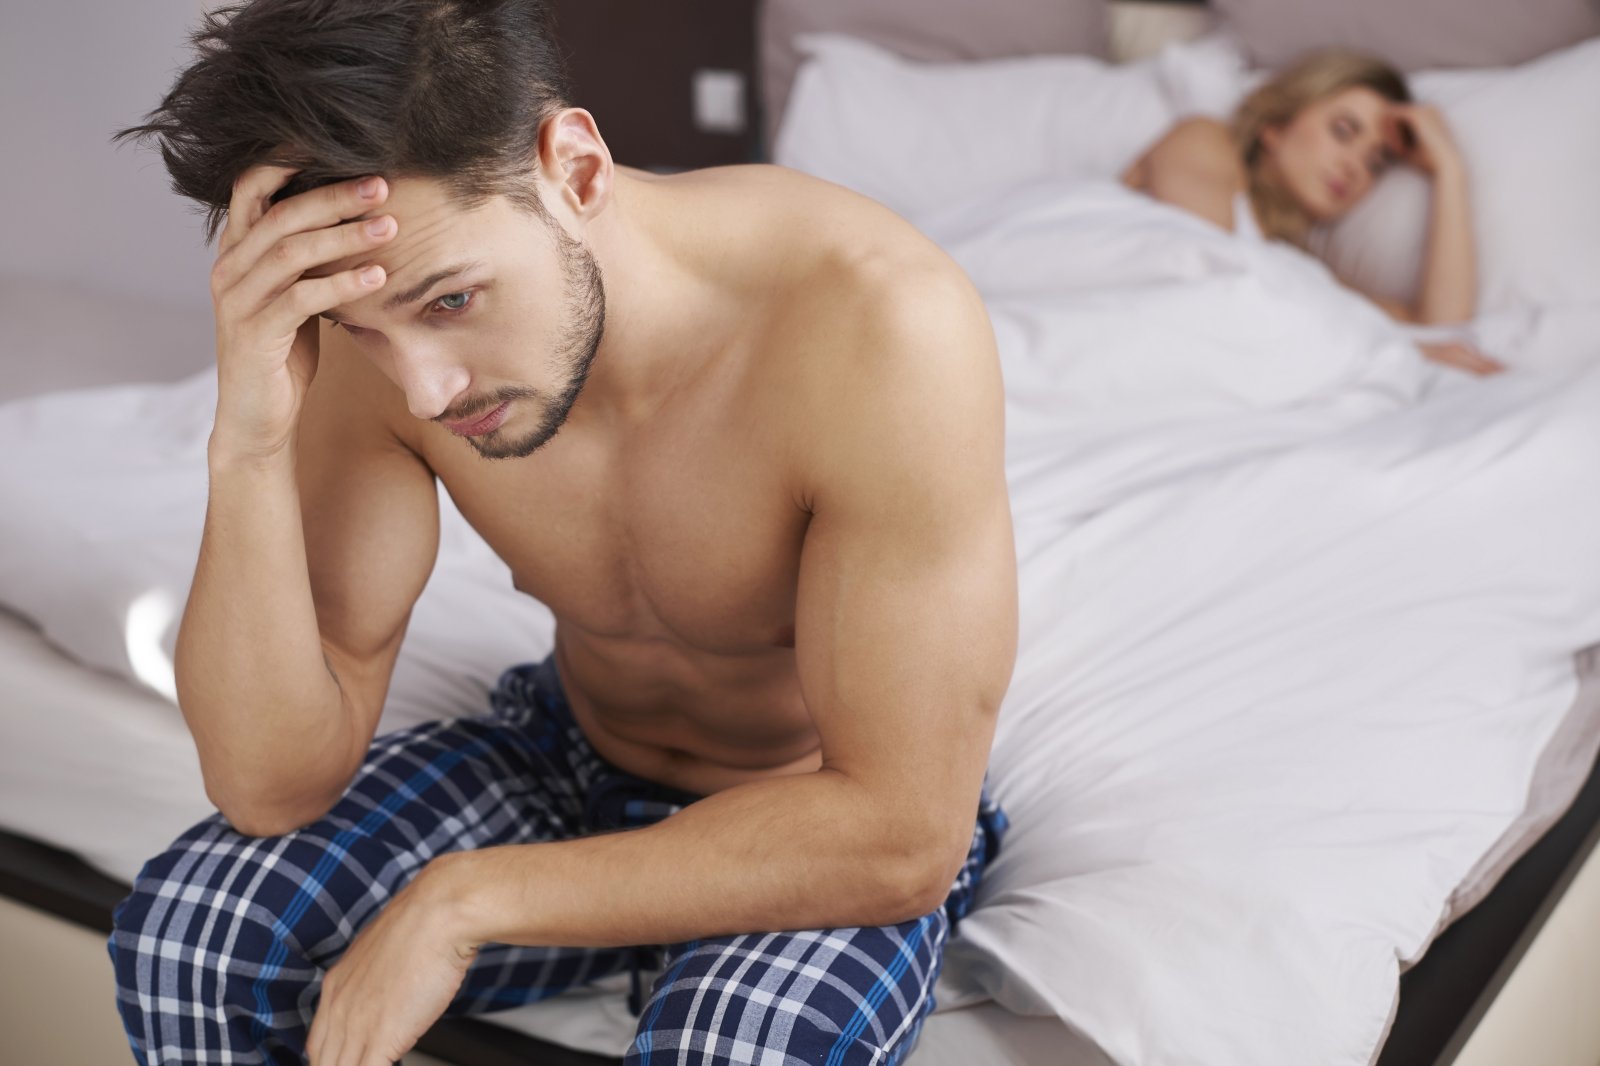 lytinio akto metu vyro erekcija sumažėja